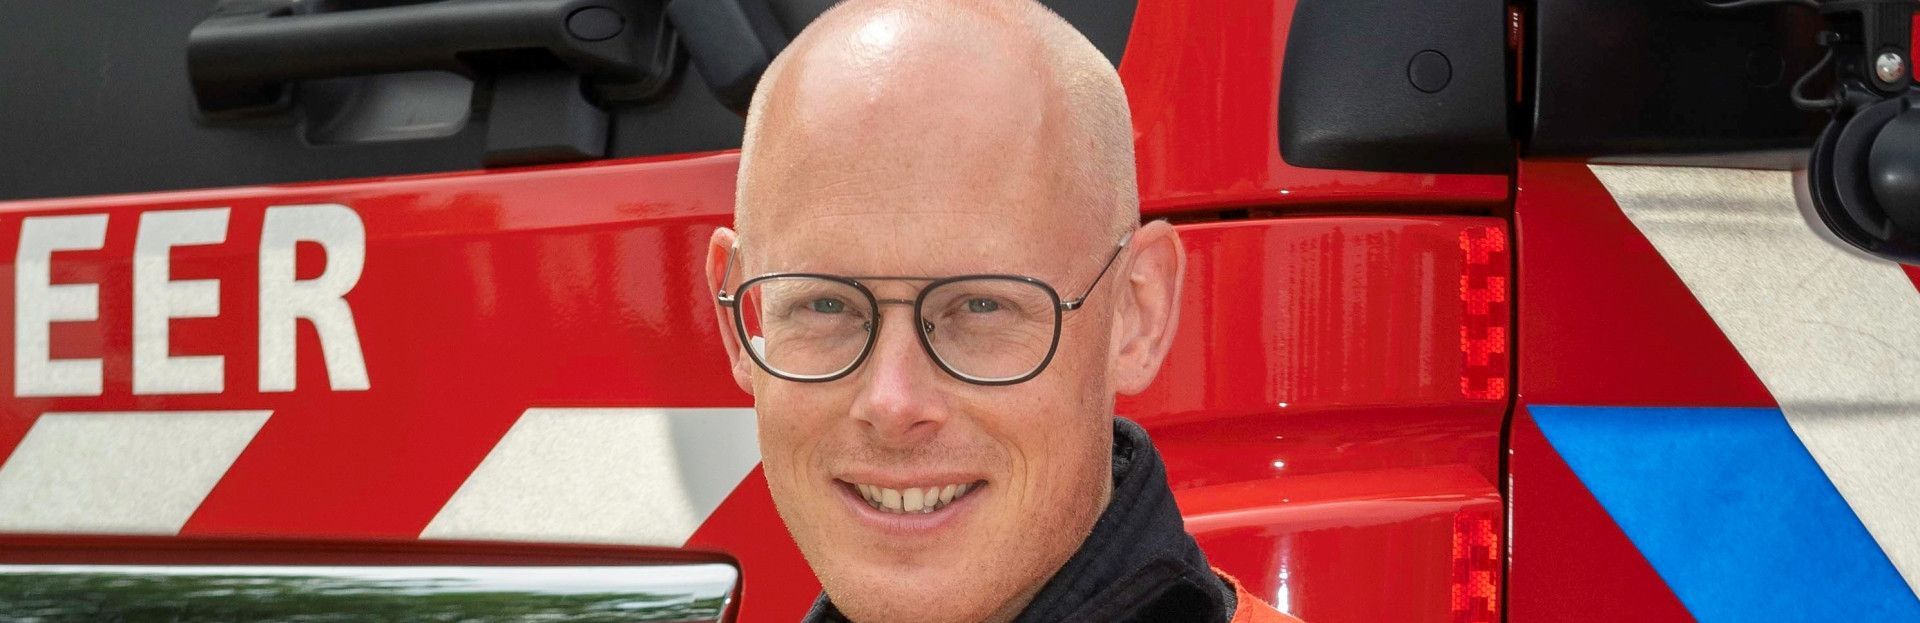 Brandweerman verteld stoere verhalen in de bieb van Schiermonnikoog